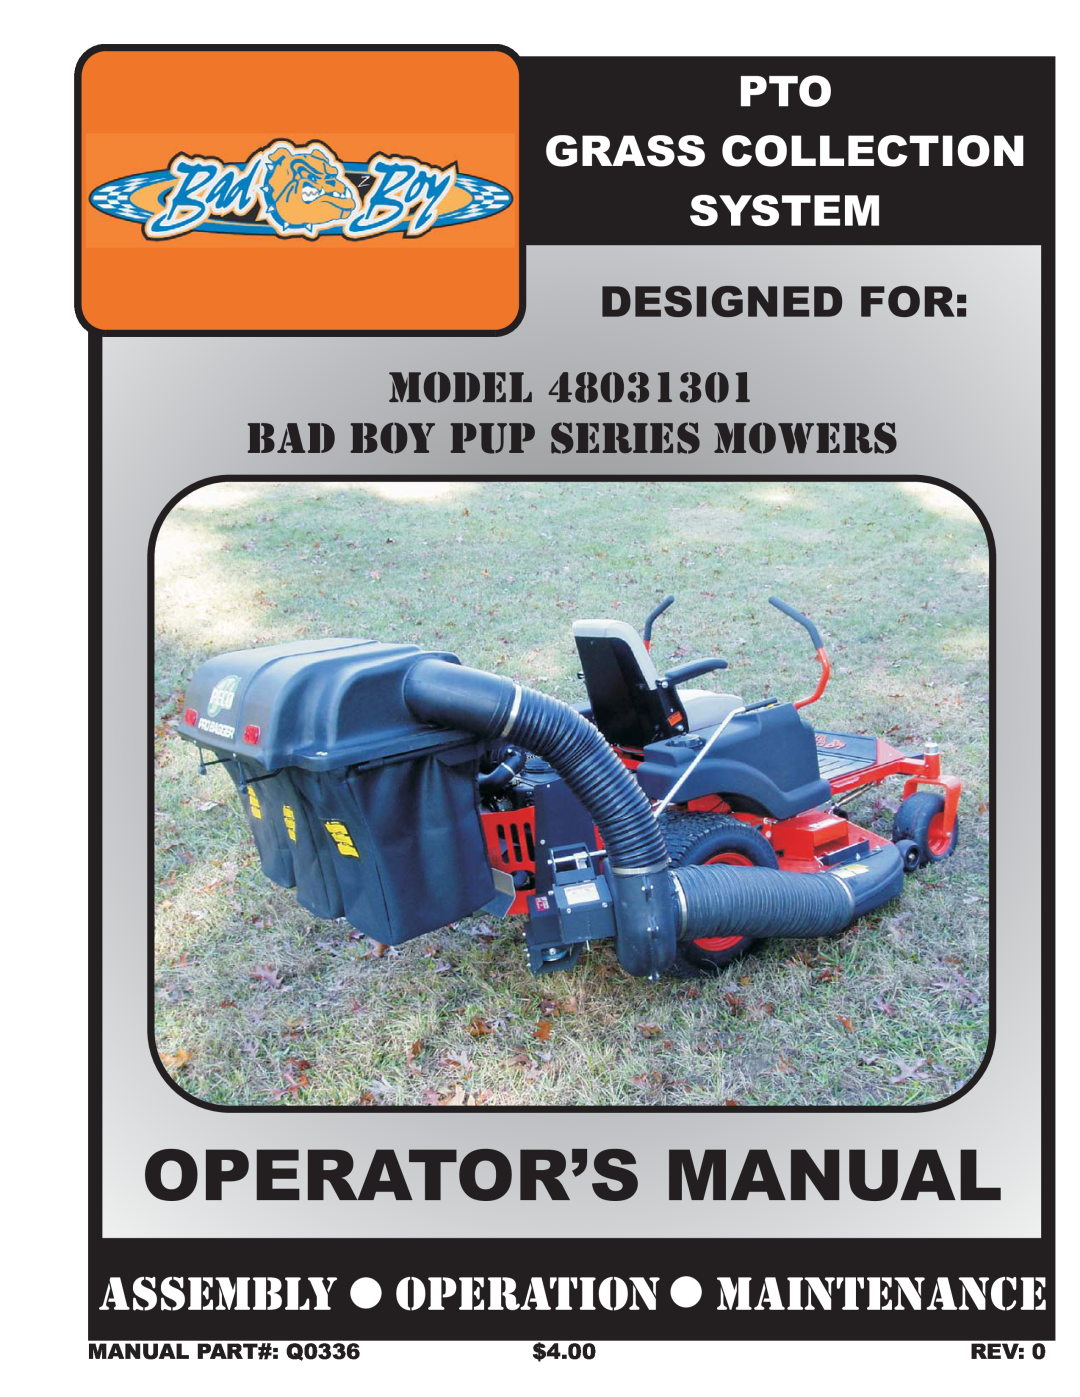 Bad Boy Mowers 48031301 manual Designed For, MANUAL PART# Q0336, $4.00, Rev, Operator’S Manual 